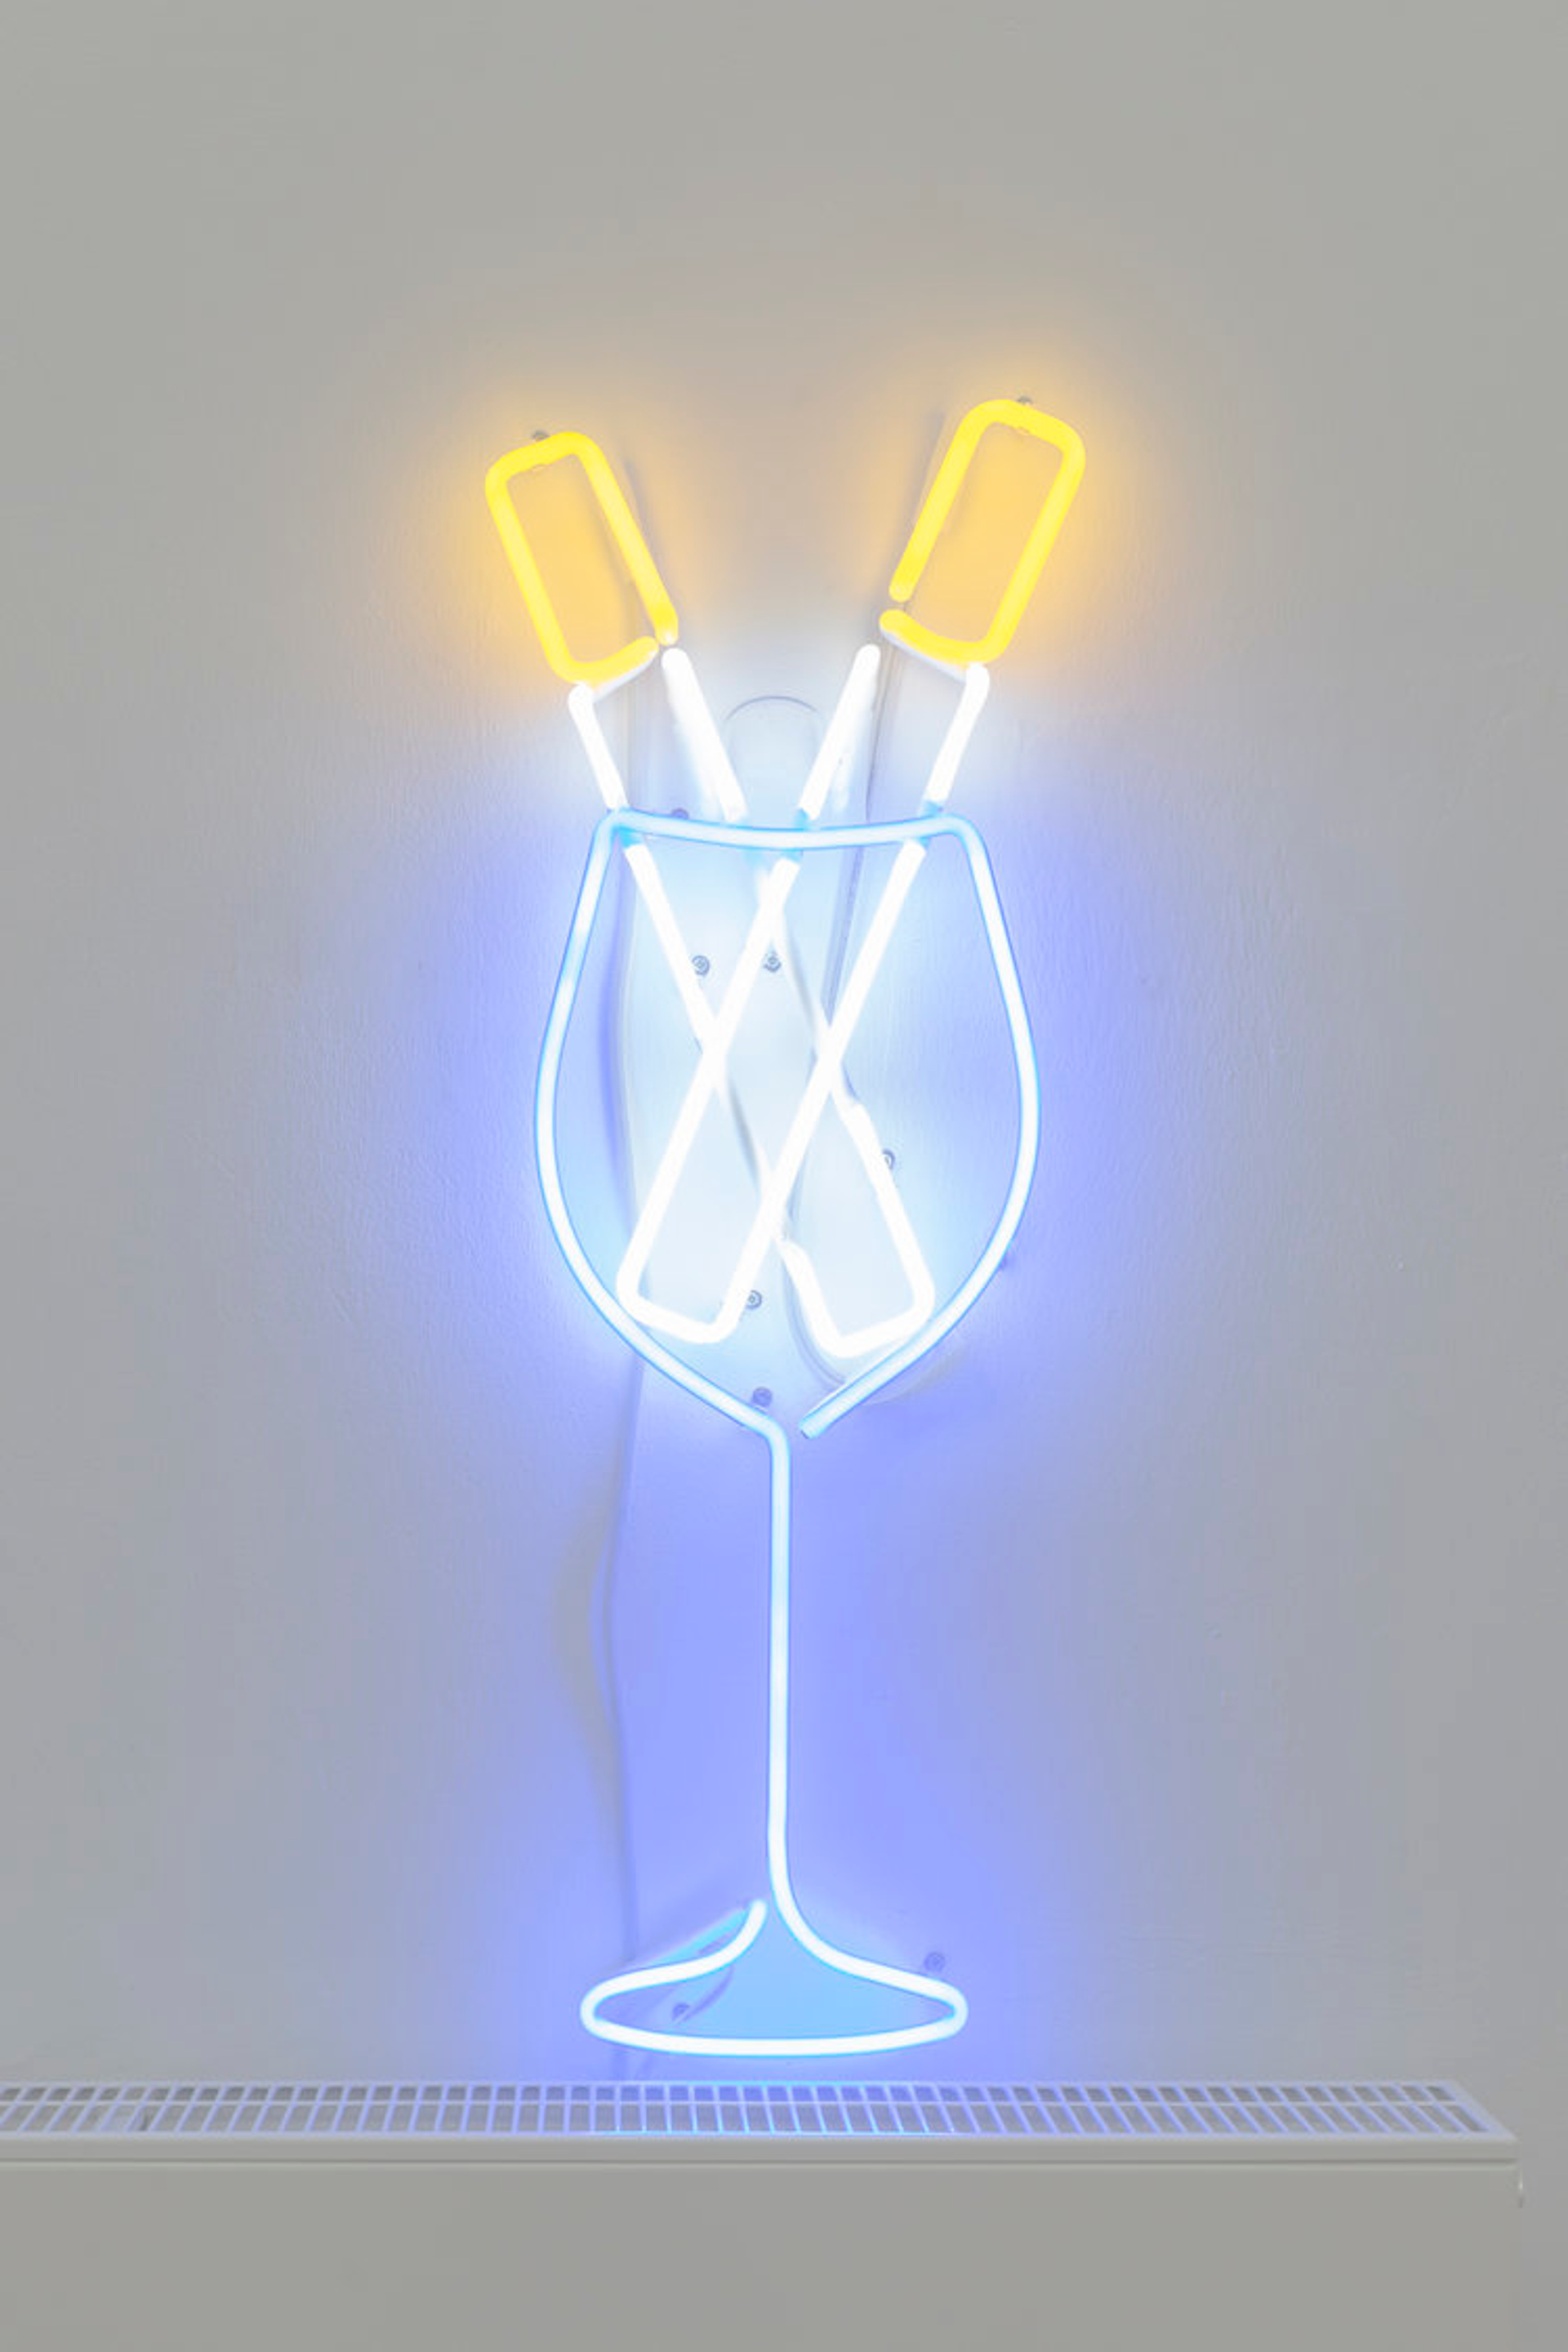 ART N MORE (Paul Bowler & Georg Weißbach), Auf die toten Künstler II, 2016, neon sign, 46 x 32 cm